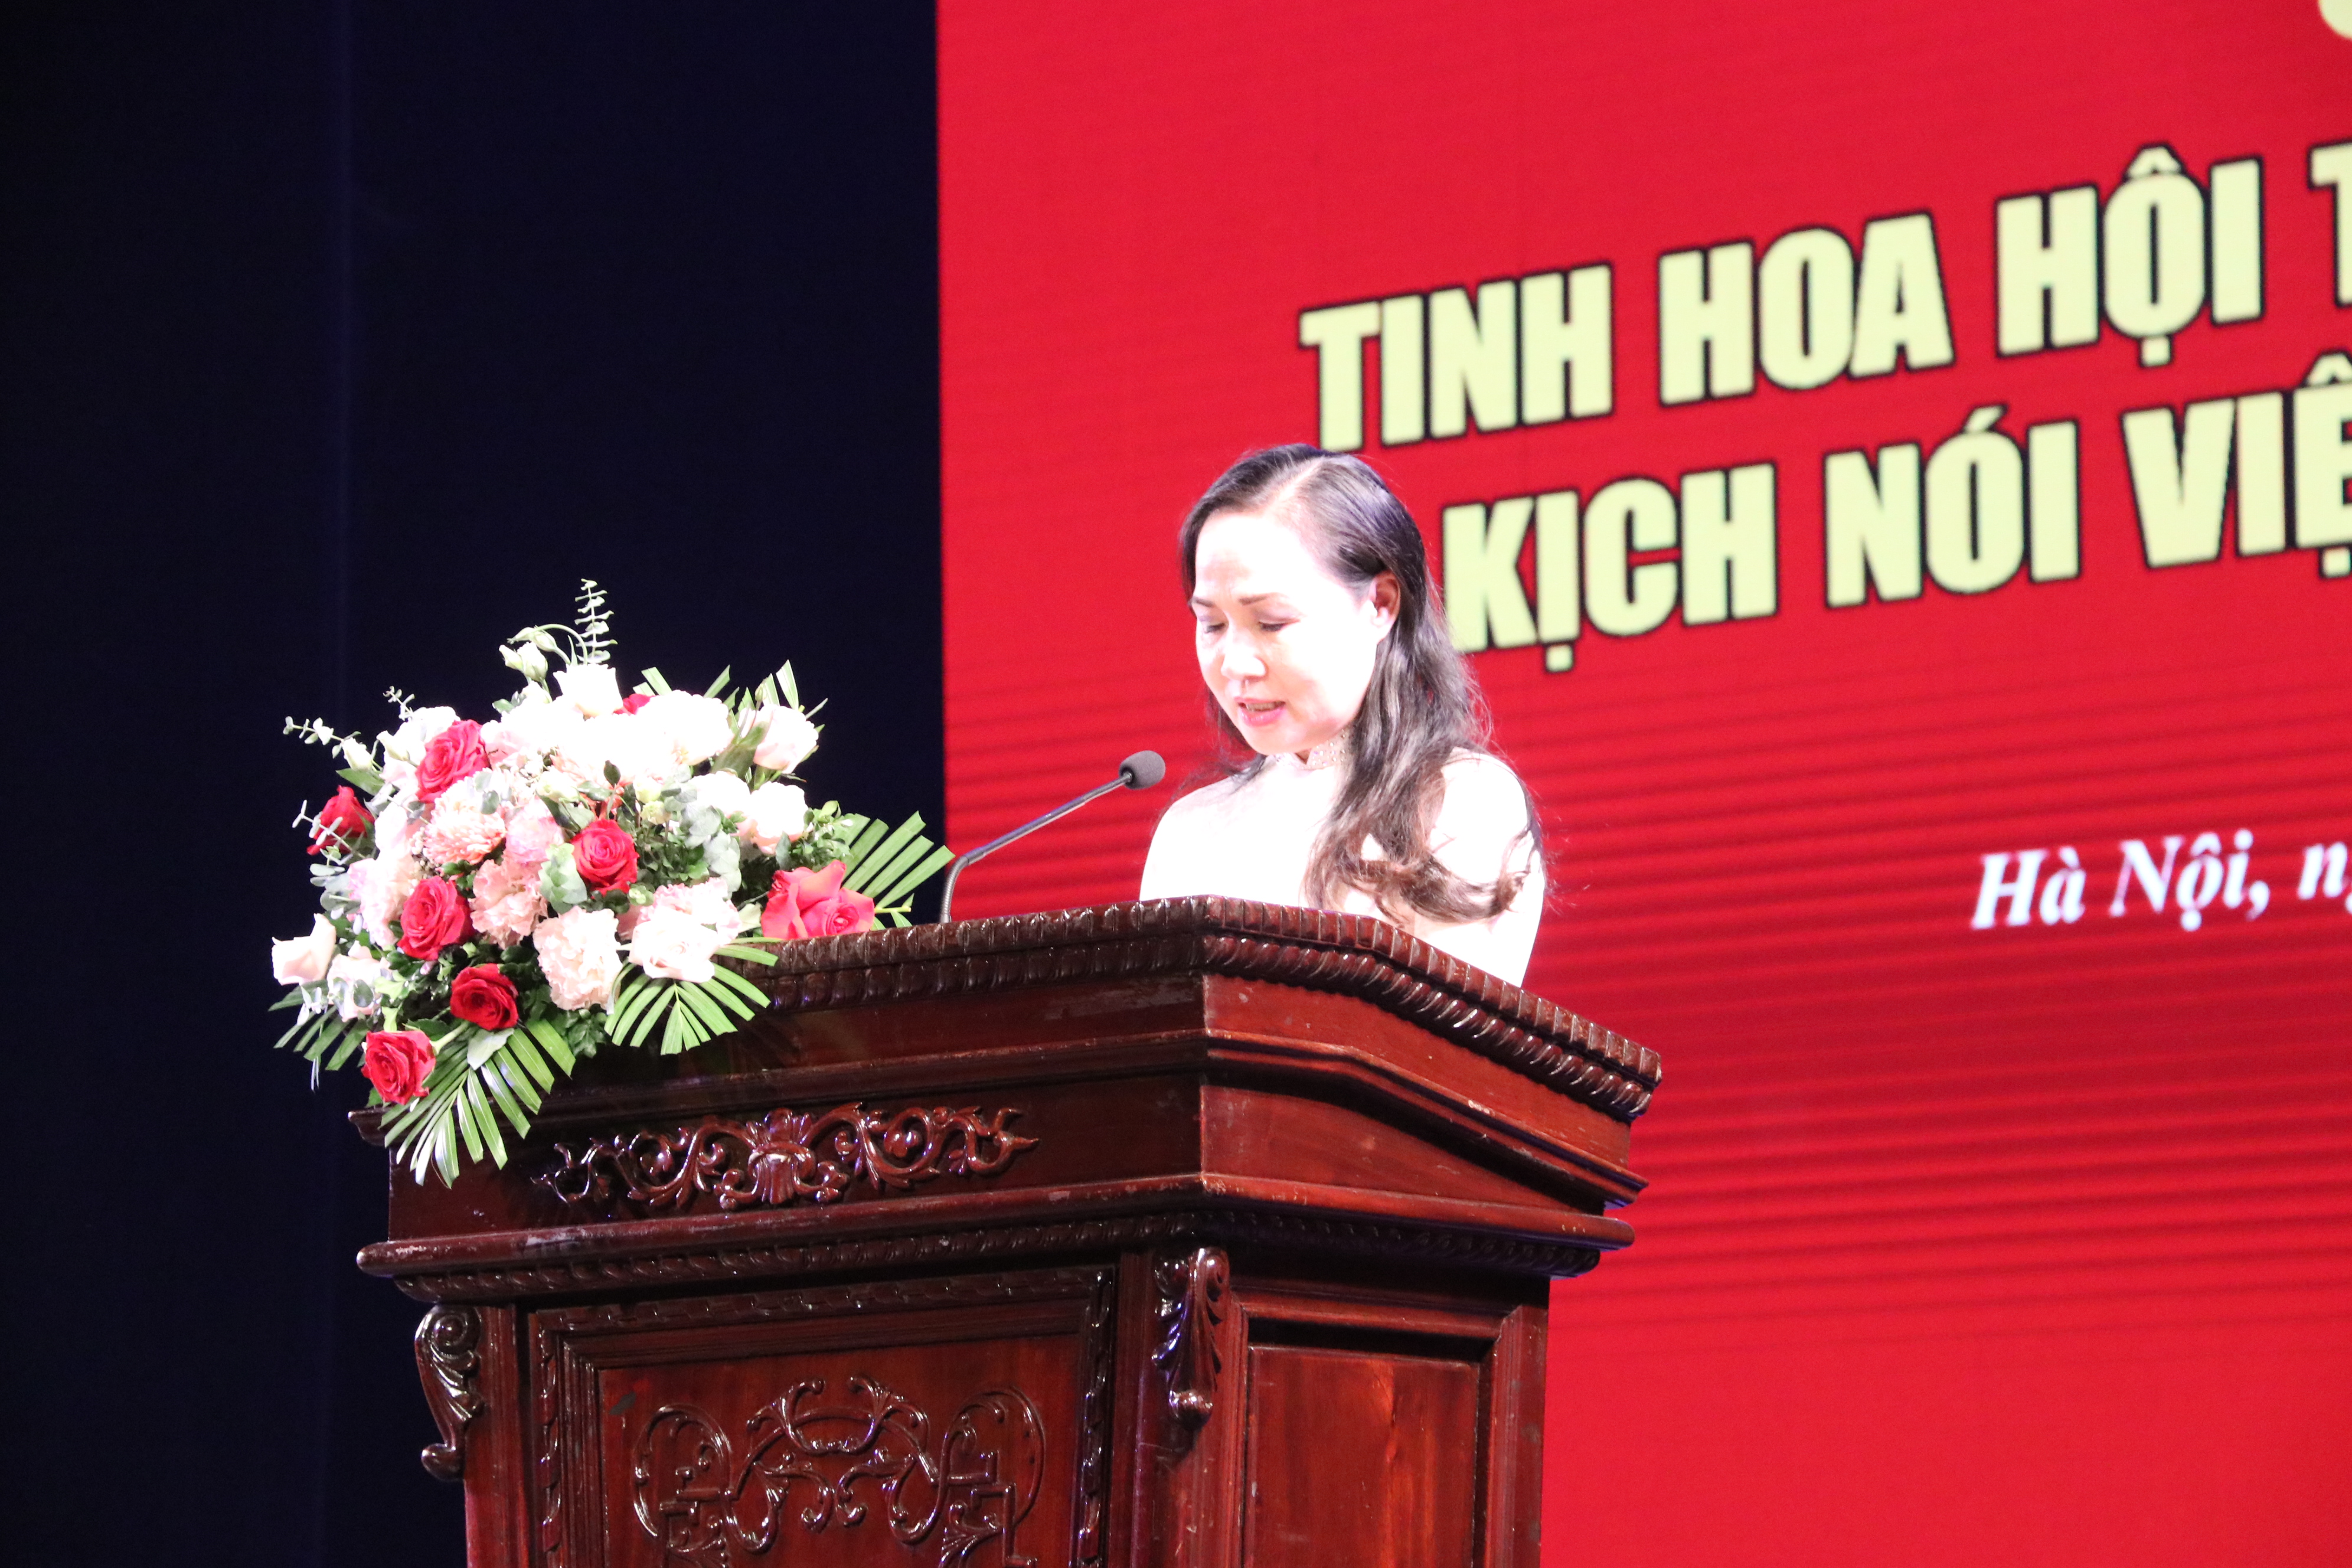 Bế mạc Tuần lễ kỷ niệm 100 năm sân khấu kịch nói Việt Nam